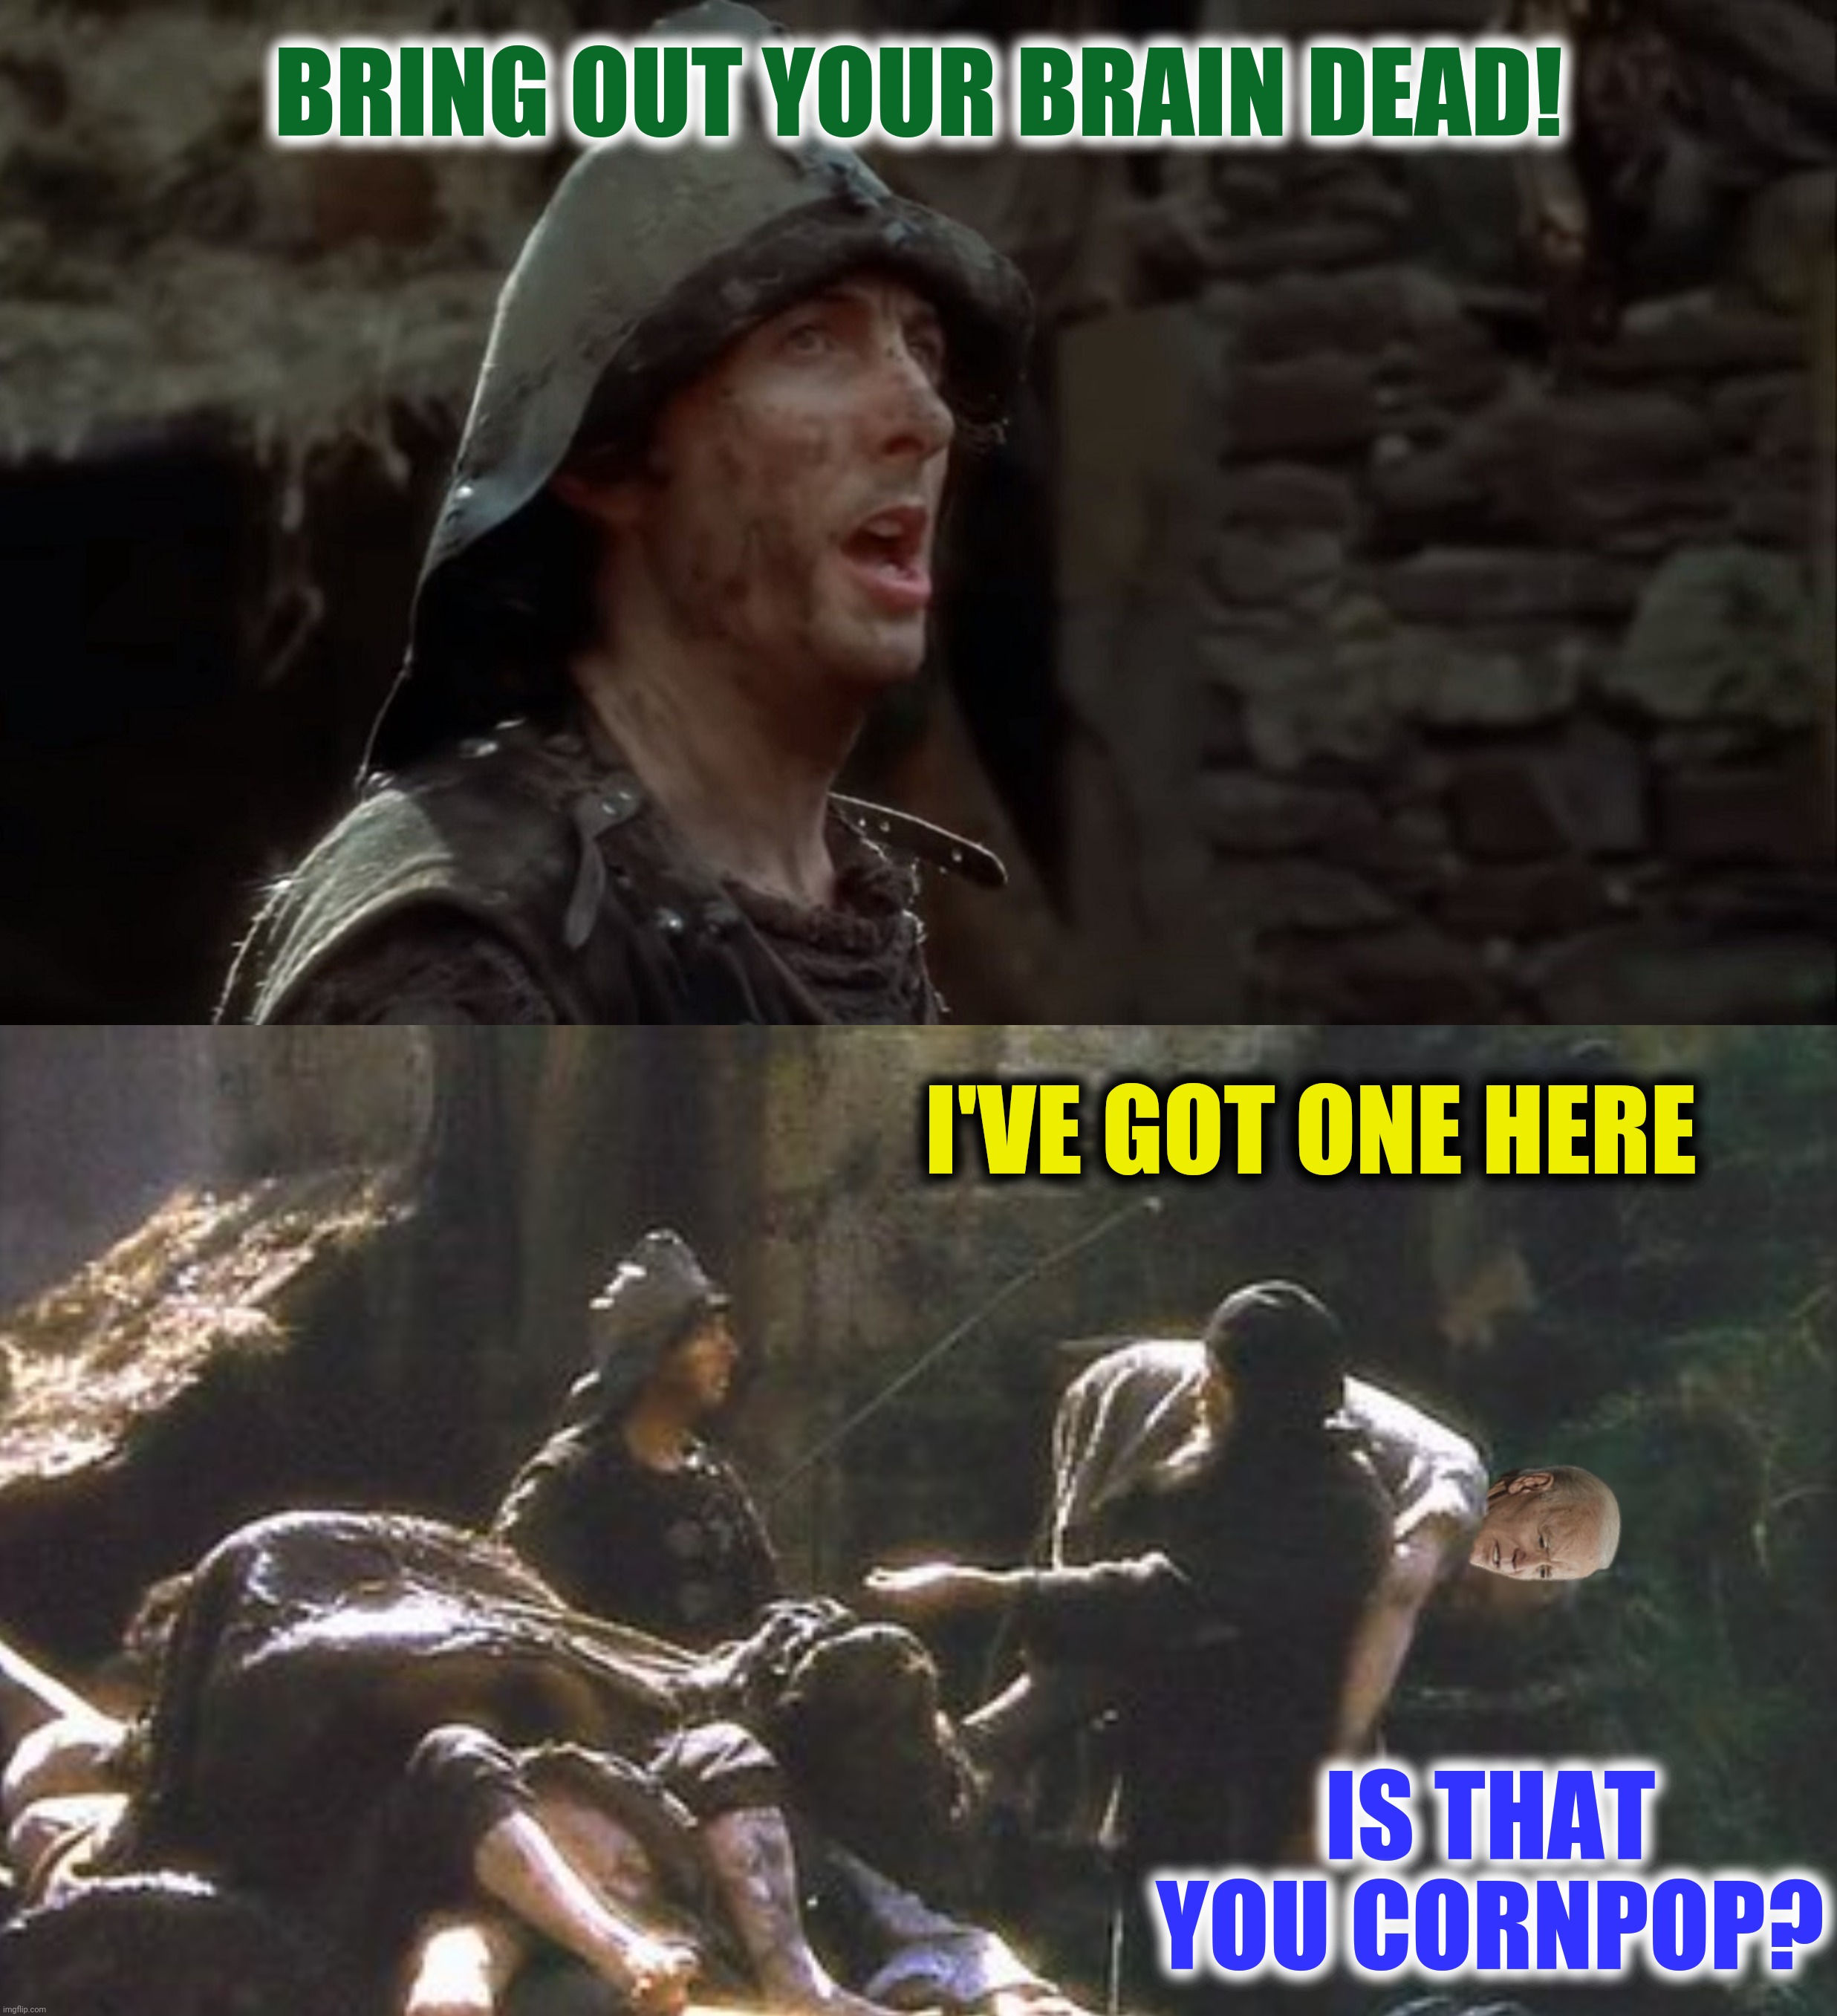 monty python meme bring out your dead